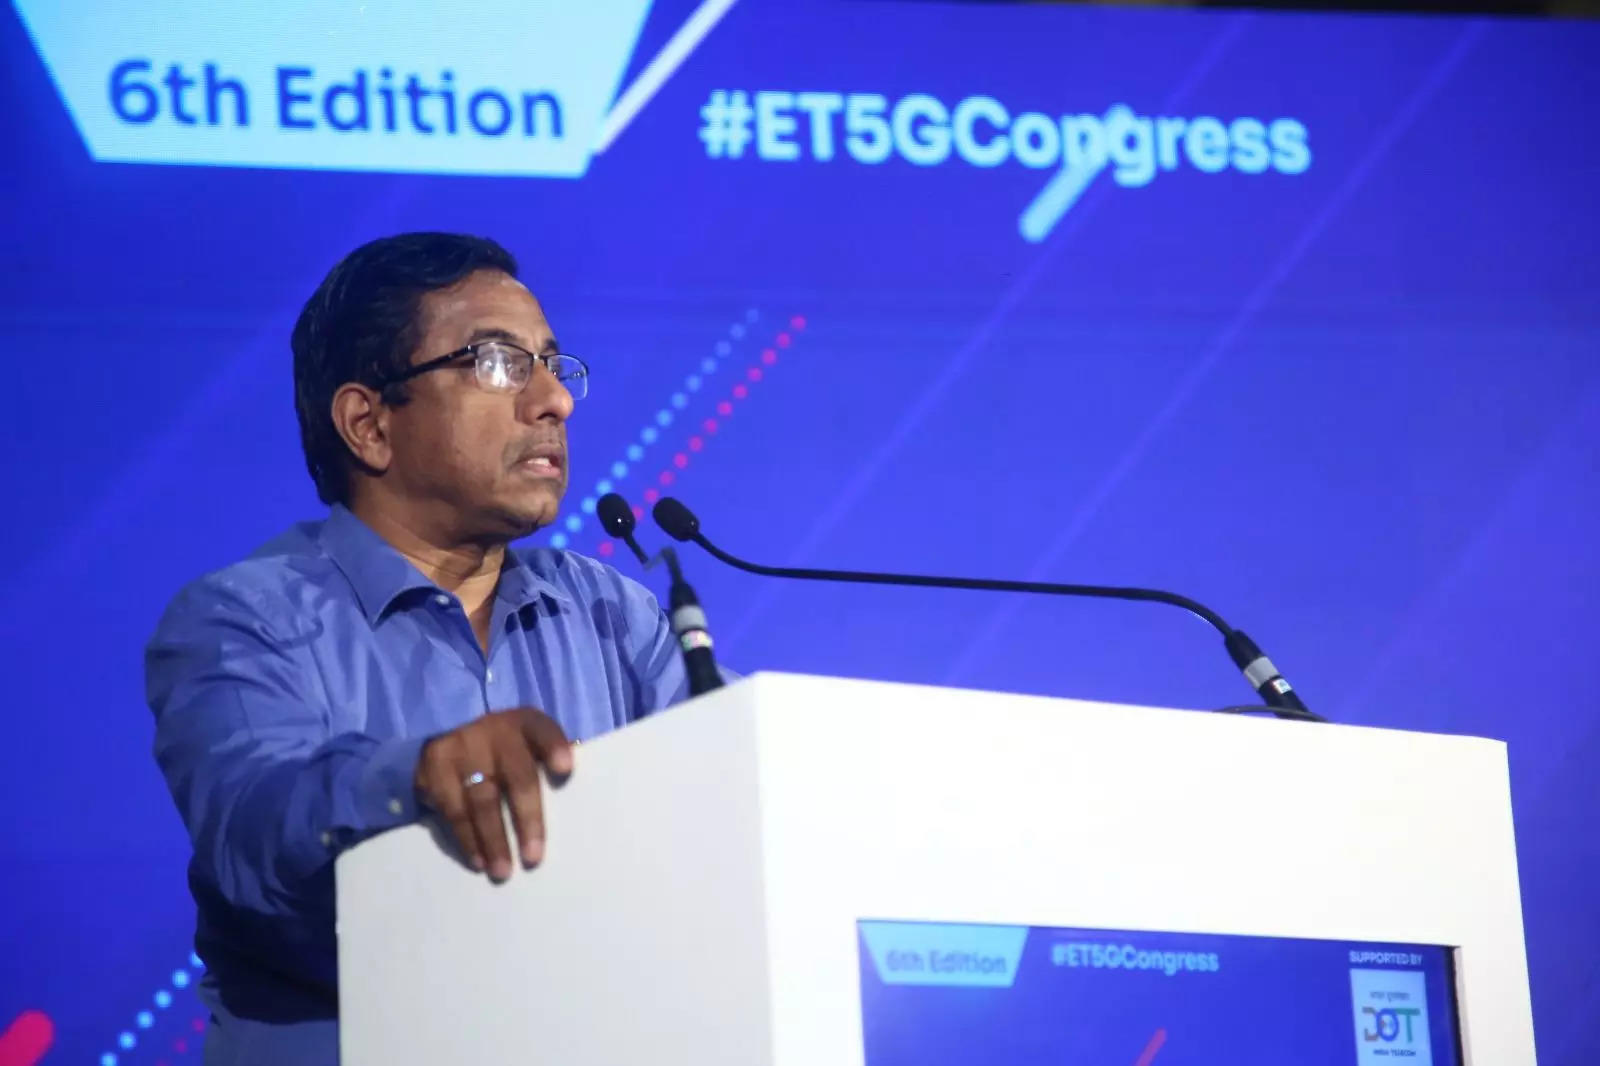   Секретарь Департамента телекоммуникаций К. Раджараман на шестом Конгрессе ETTelecom 5G - 2023. 